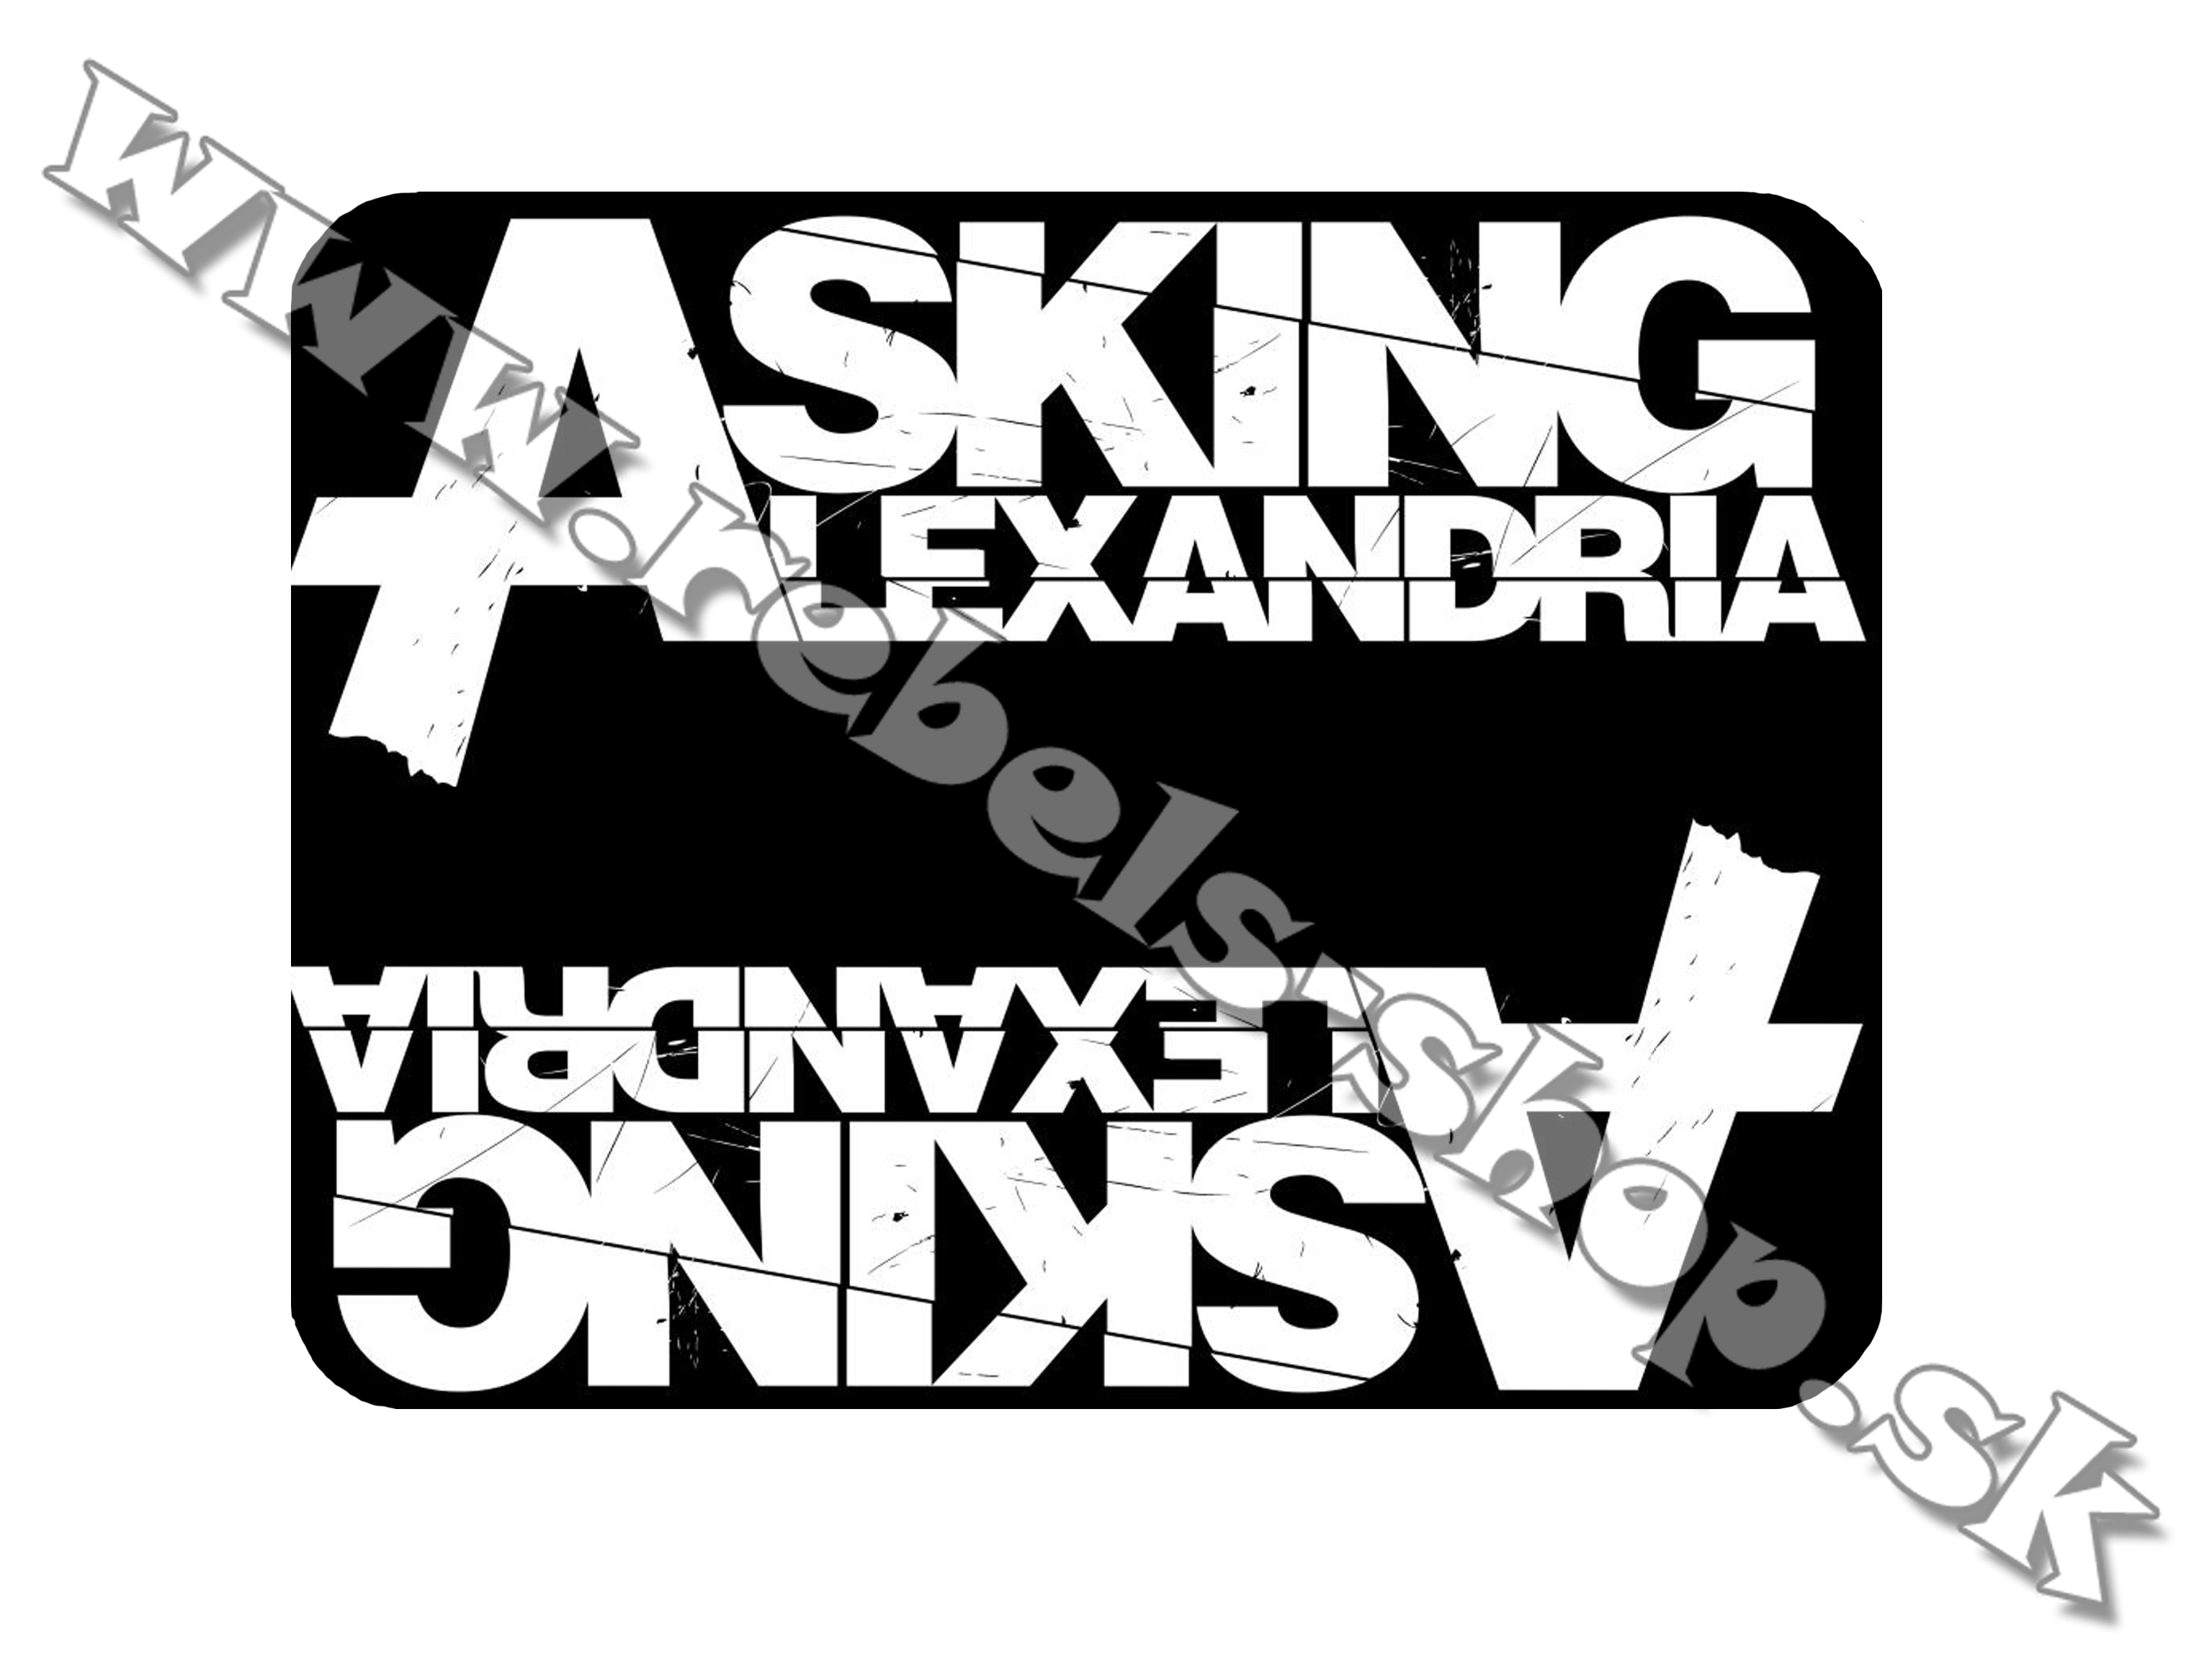 Podložka pod myš "Asking Alexandria"